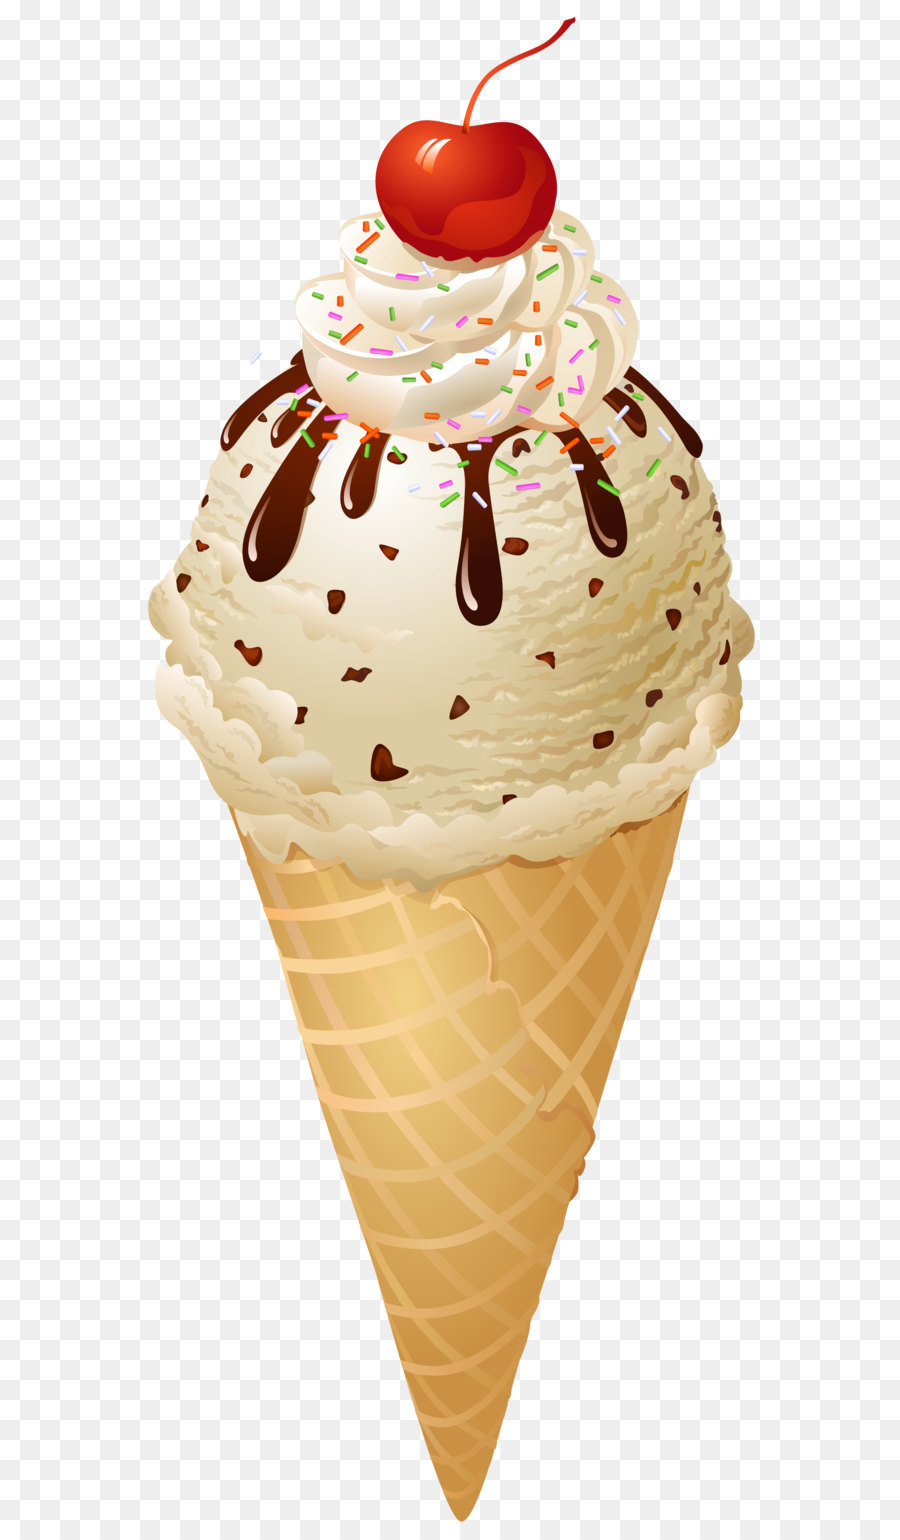 Ice cream cone Apple pie - Transparent Ice Cream Cone PNG Picture png download - 1683*3977 - Free Transparent Ice Cream png Download.